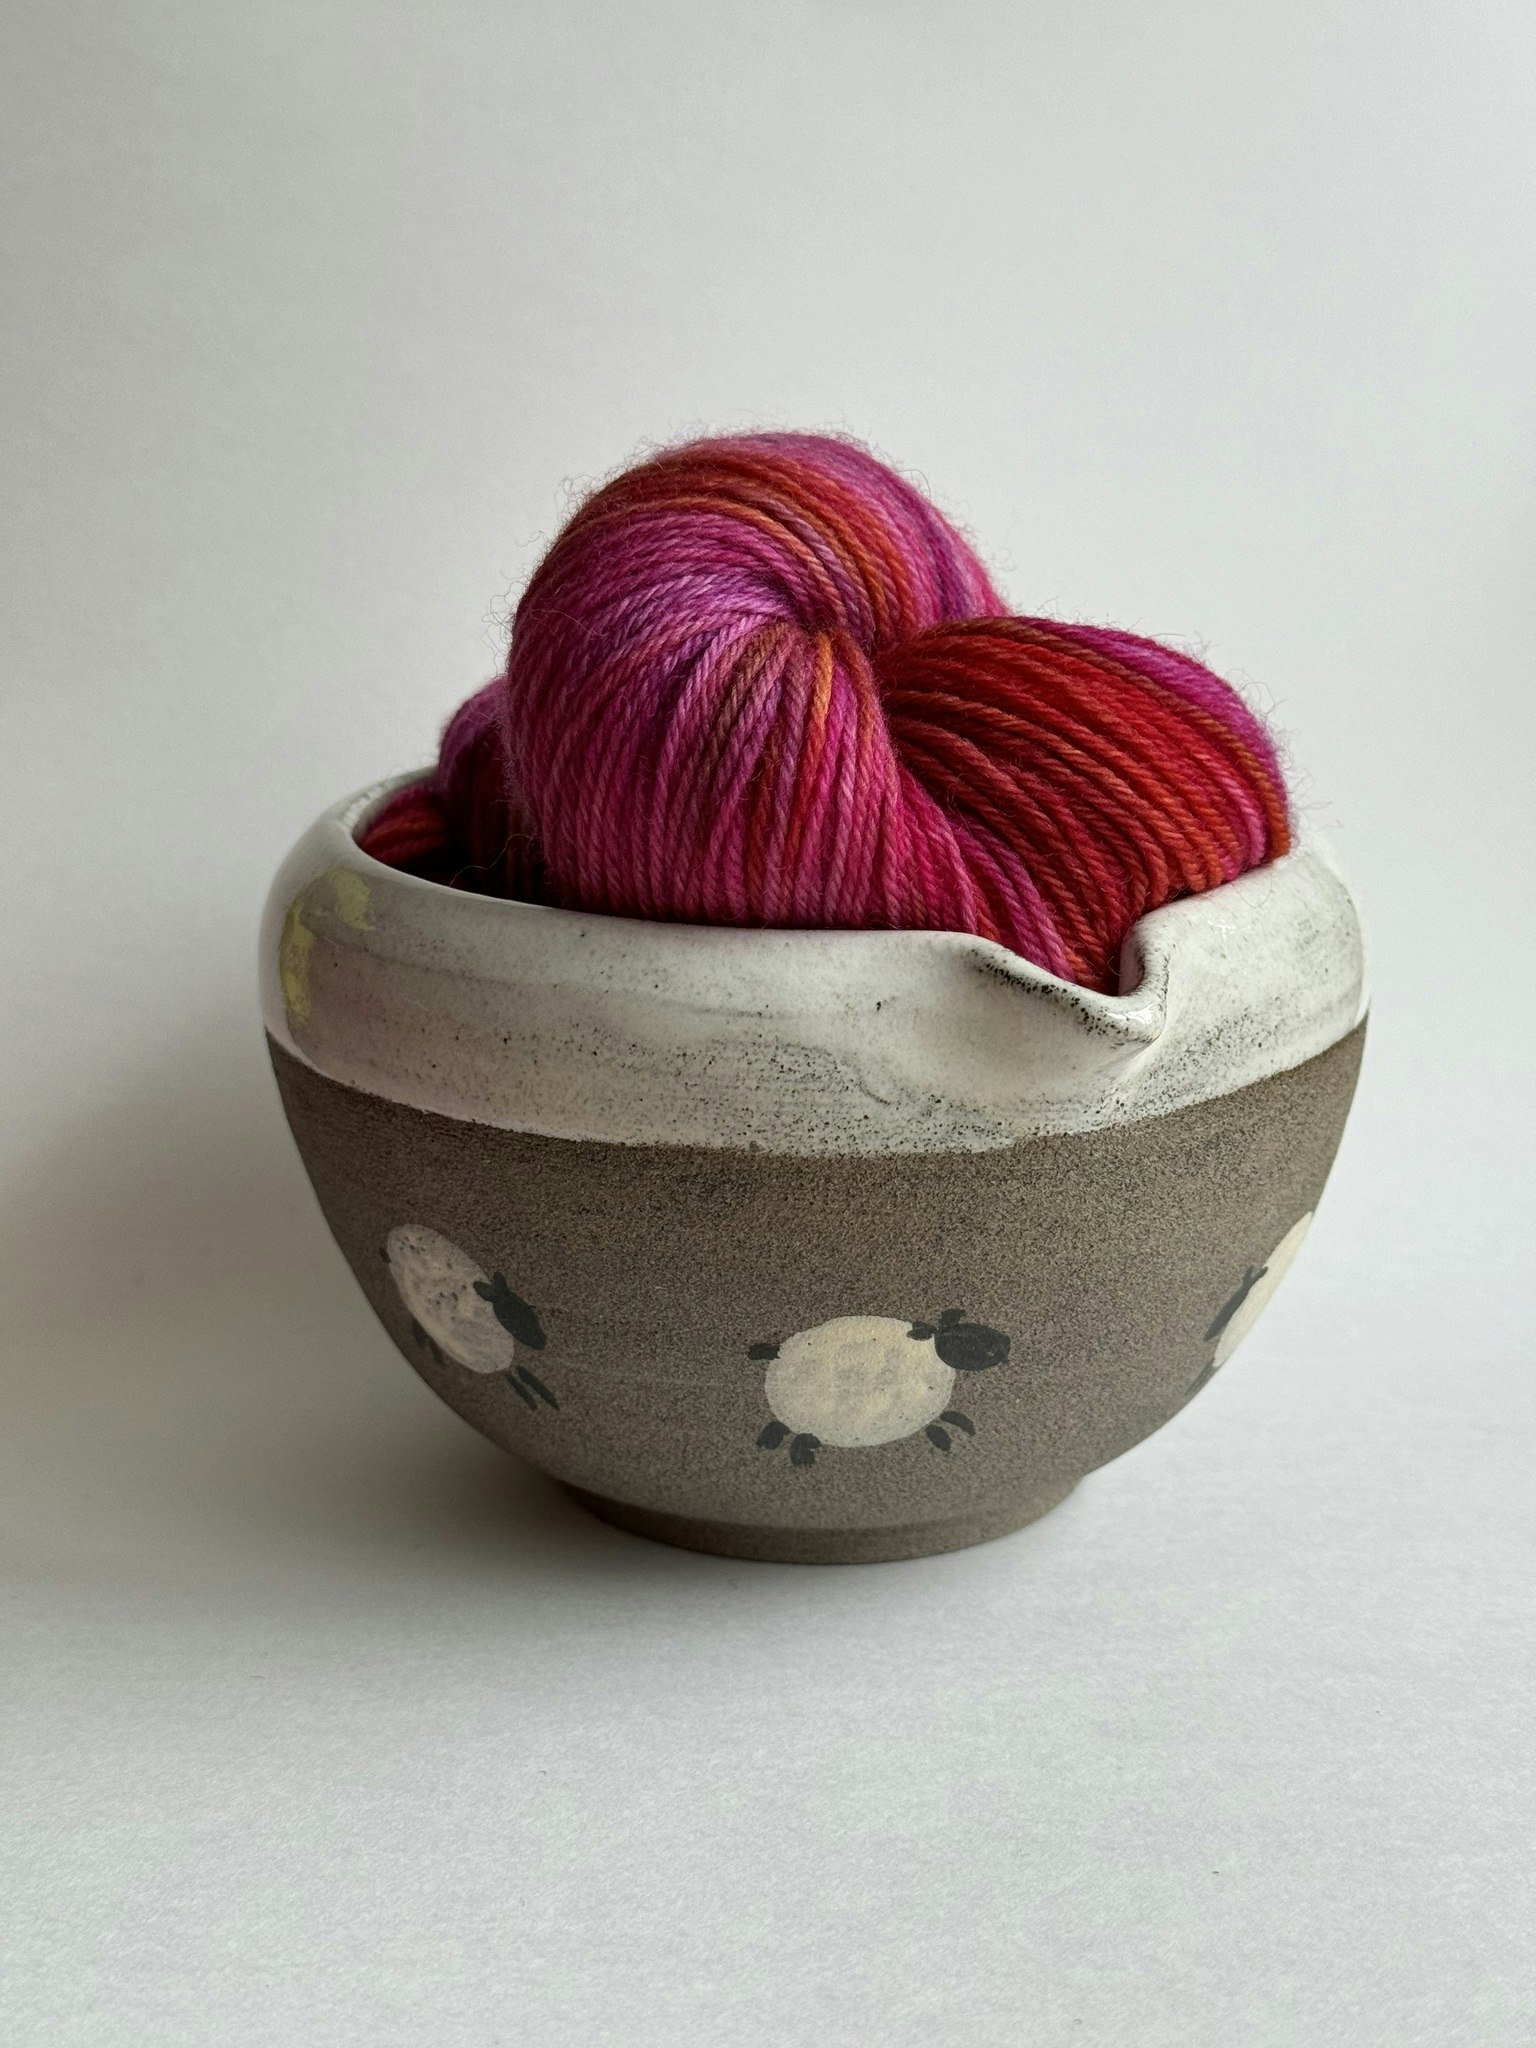 Garn- och keramikpaket, innehåller handfärgat ullgarn och en drejad keramikskål av stengods, dekorerad med små ulliga får